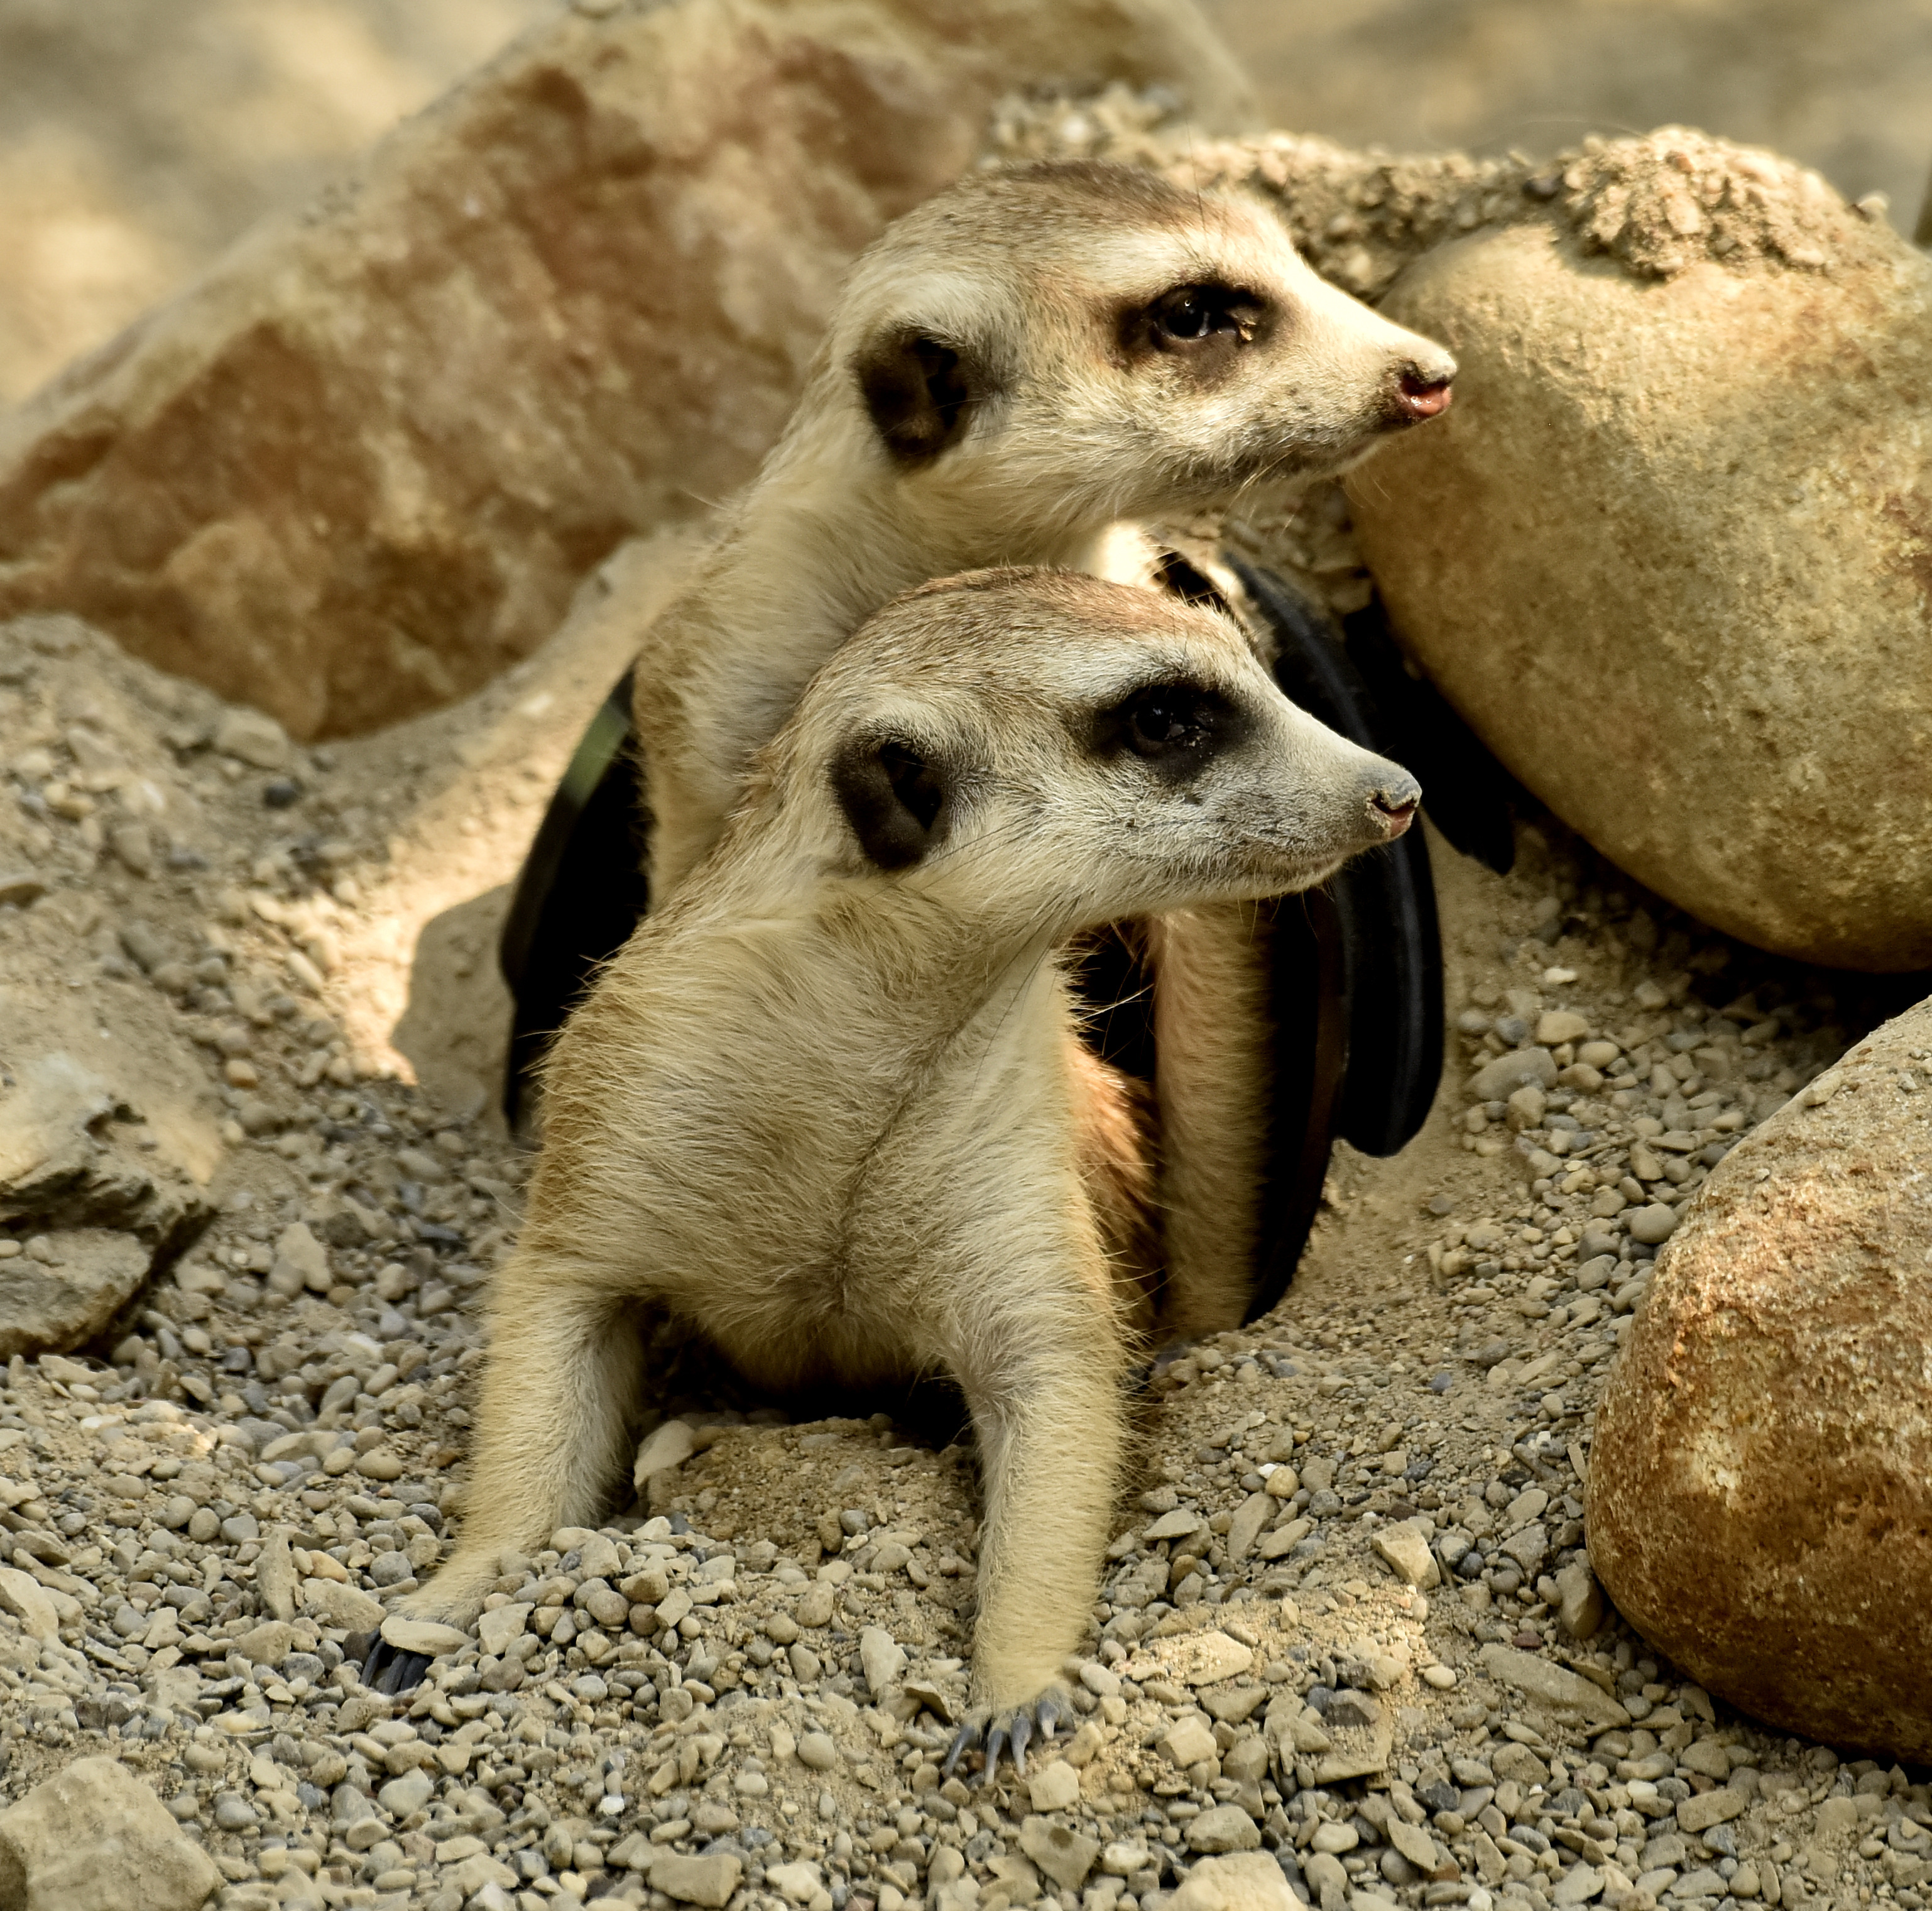 Meerkats - The Cincinnati Zoo & Botanical Garden